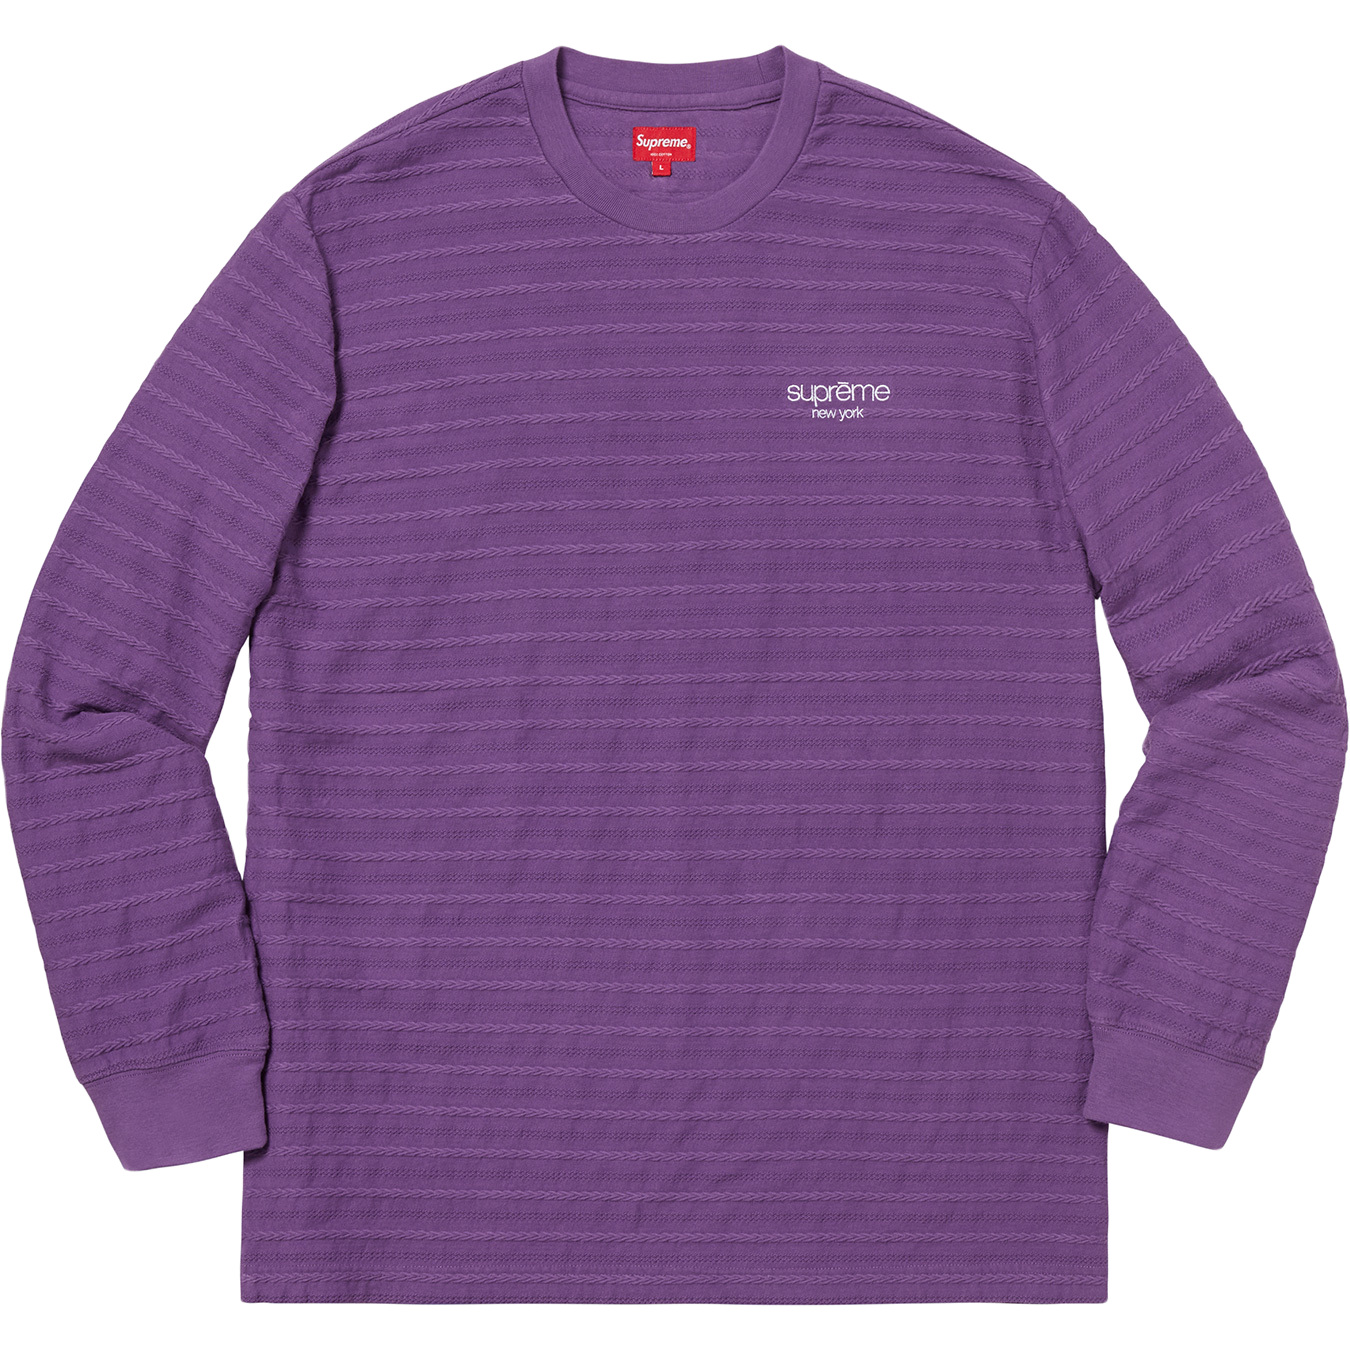 Supreme Rope Stripe Long Sleeve Top - Purple - Used